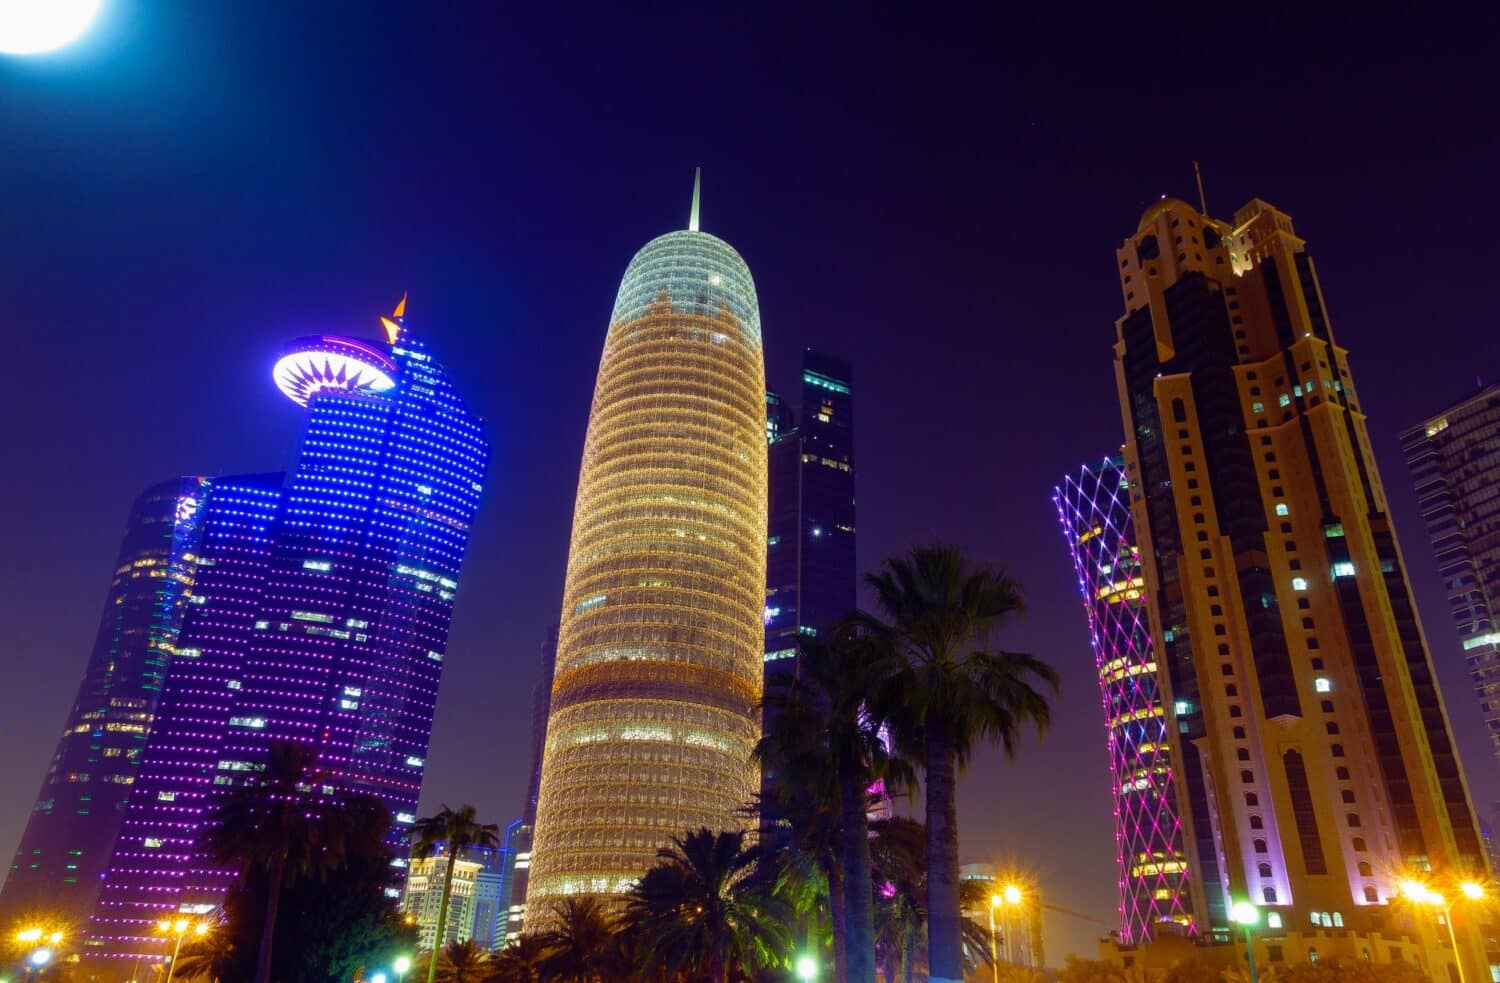 Arranha-céus iluminados à noite para ilustrar o post sobre chip de celular para o Qatar. - Foto: Mike Swigunski via Unsplash